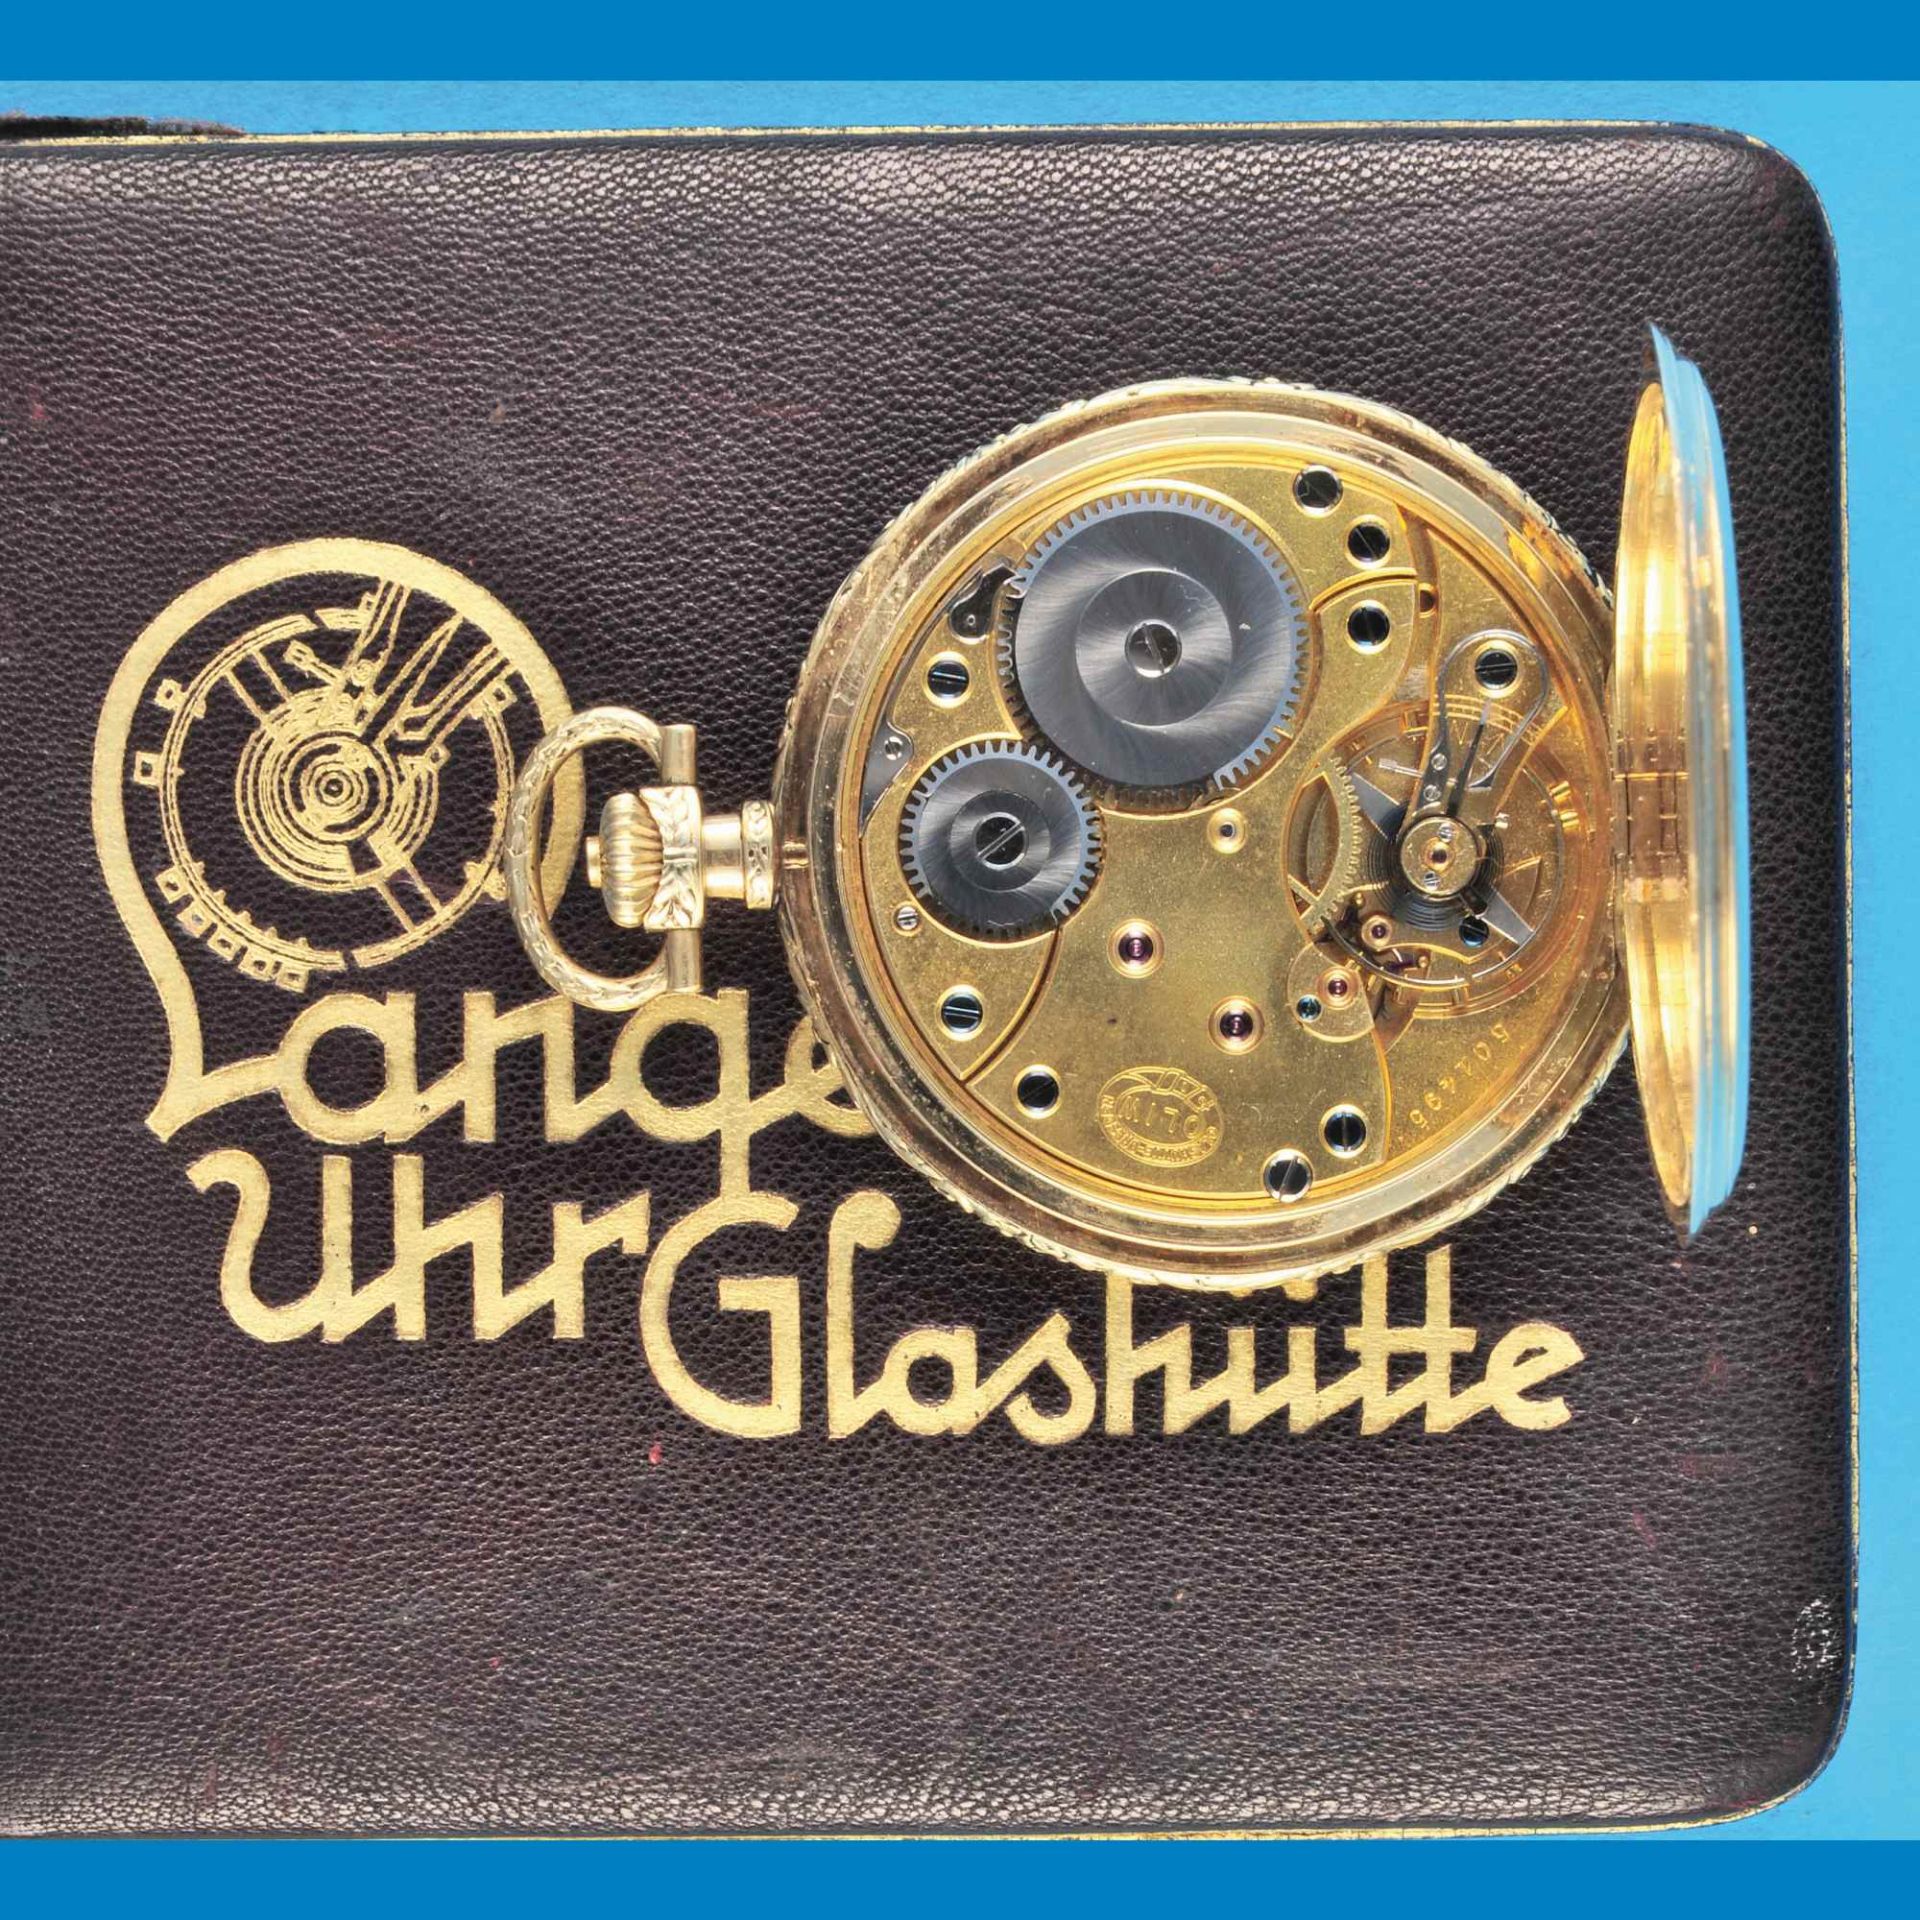 Glashütter Gold-Taschenuhr mit Sprungdeckel, im Original-Etui, Deutsche Uhrenfabrikation Glashütte